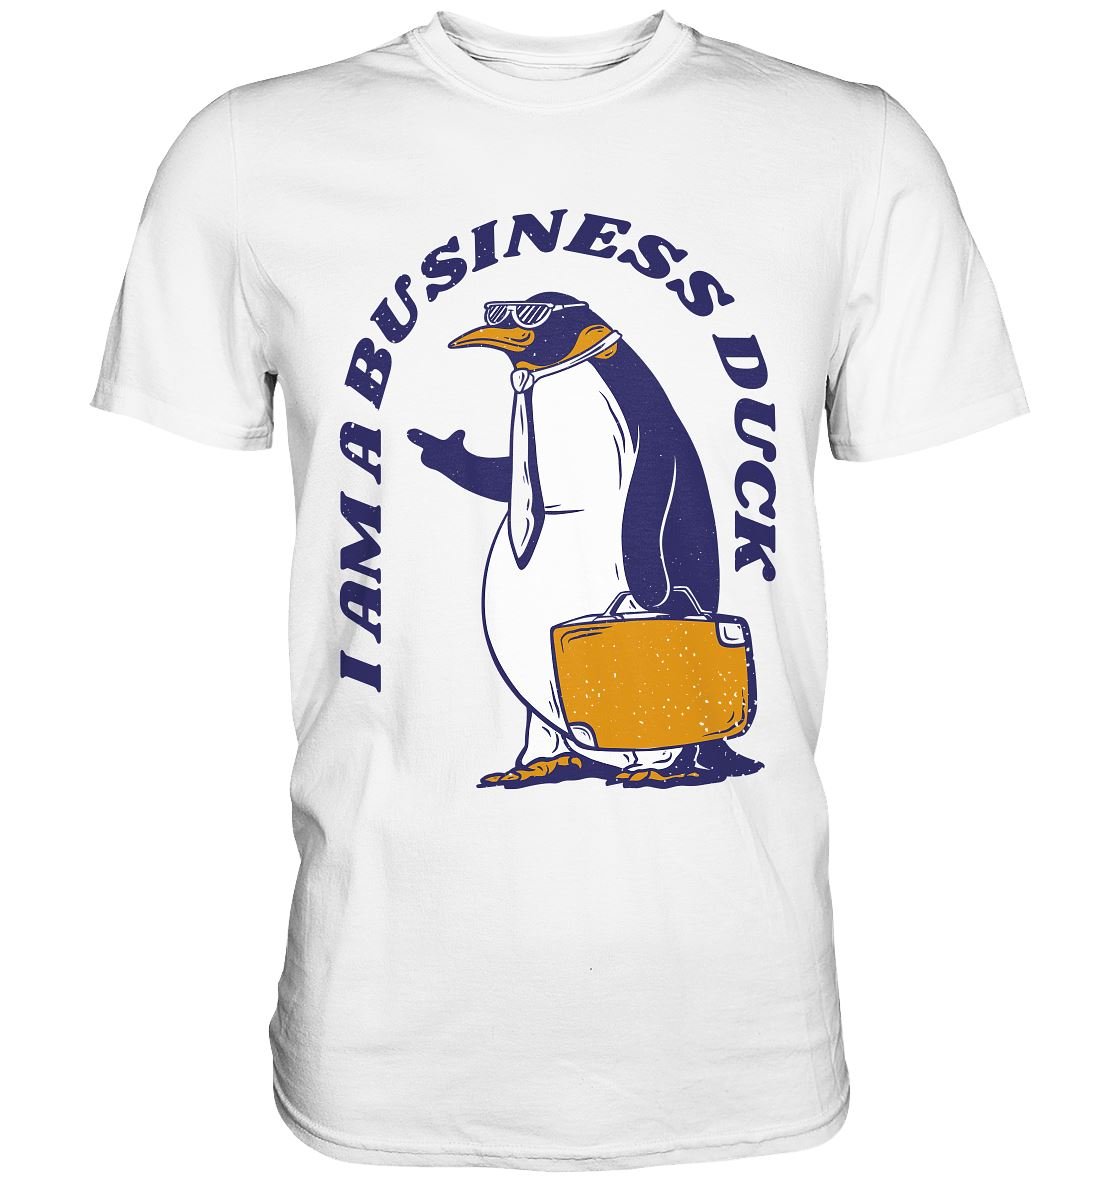 I AM A BUSINESS DUCK - Premium Shirt - BINYA